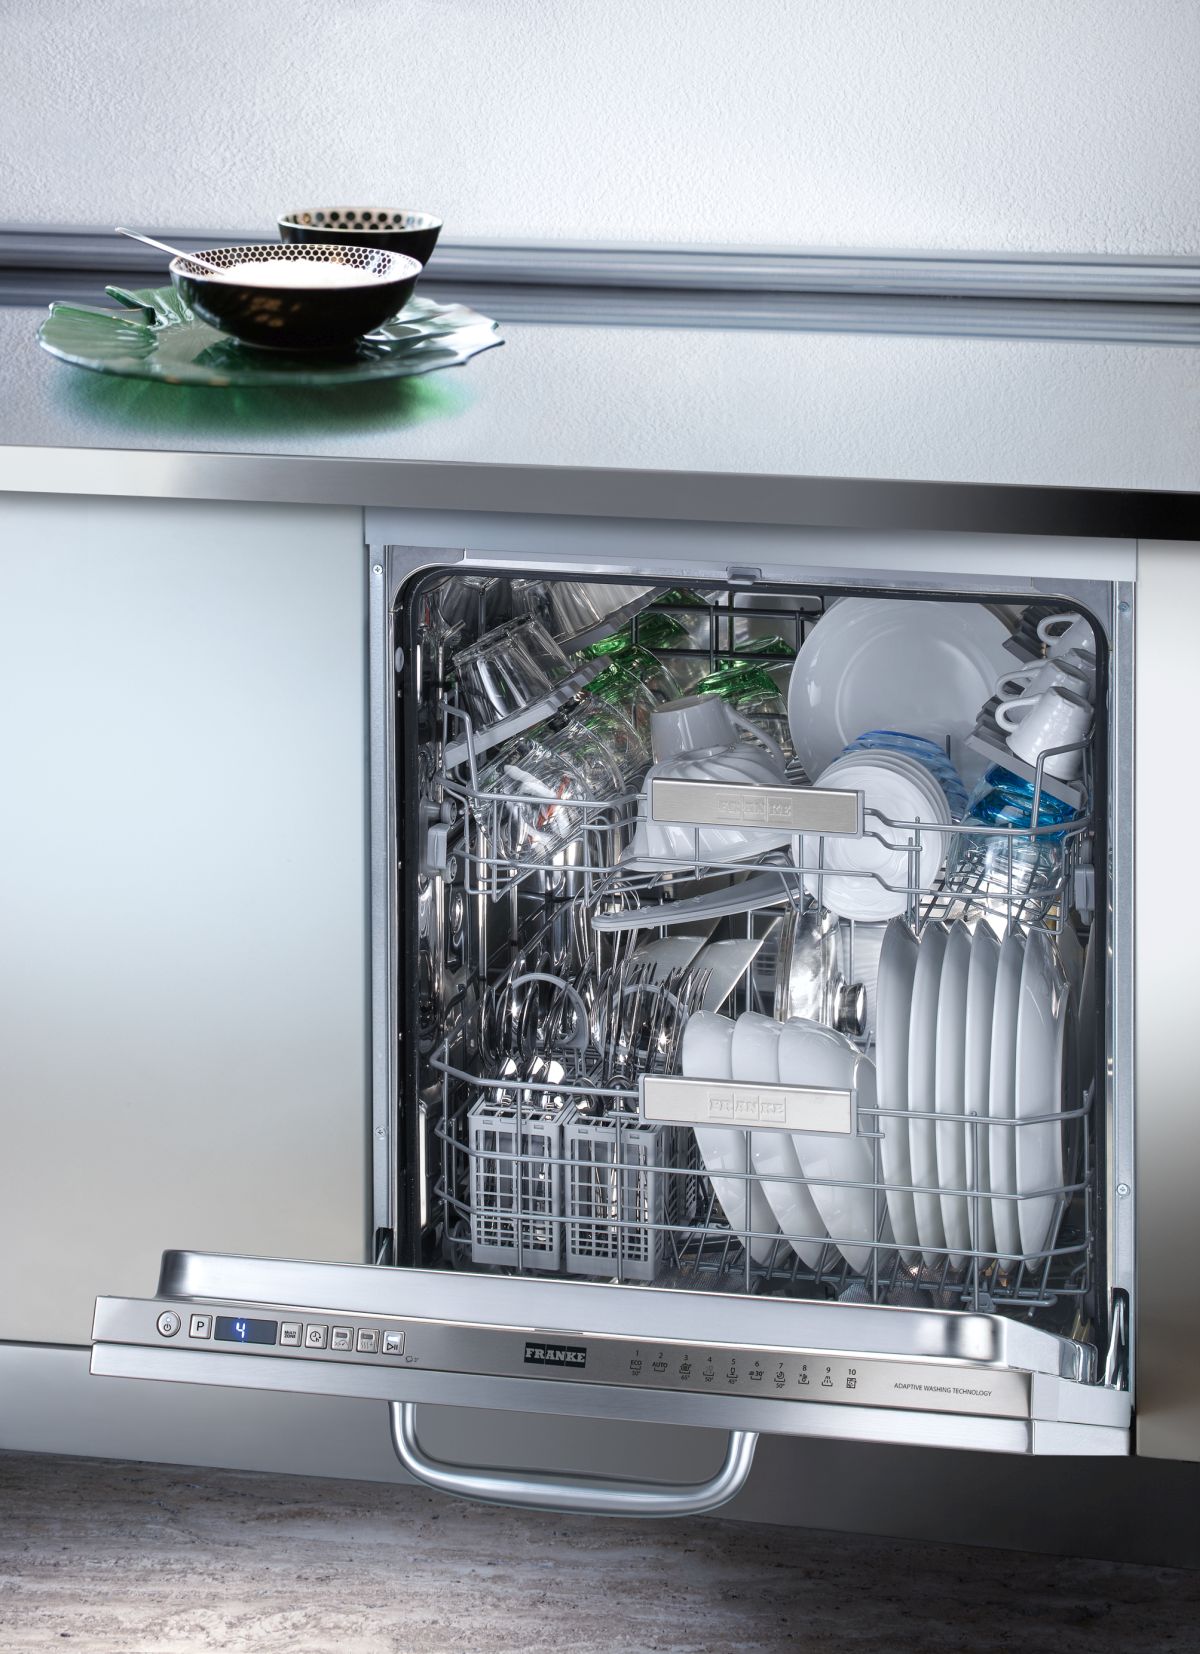 Scelta sostenibile 4: efficienza energetica anche per frigoriferi e lavastoviglie